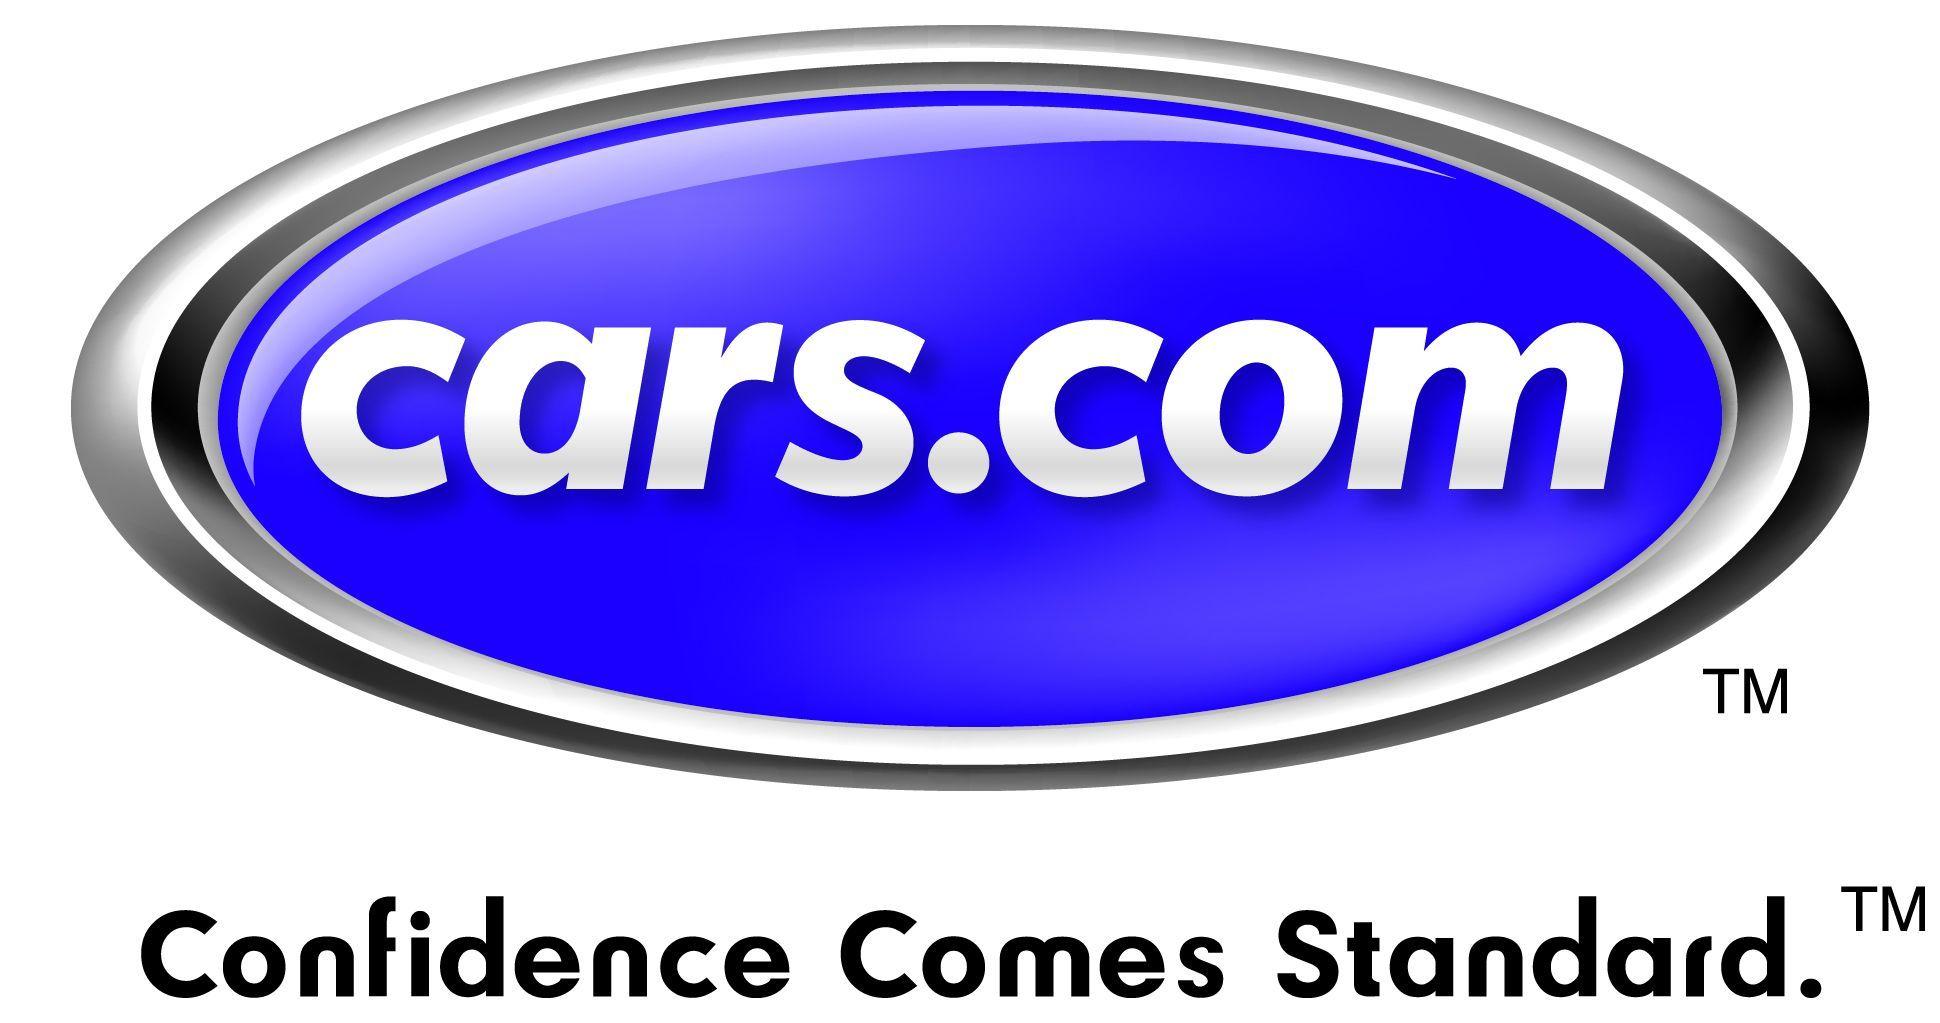 Cars.com Logo - Cars.com Goes Up